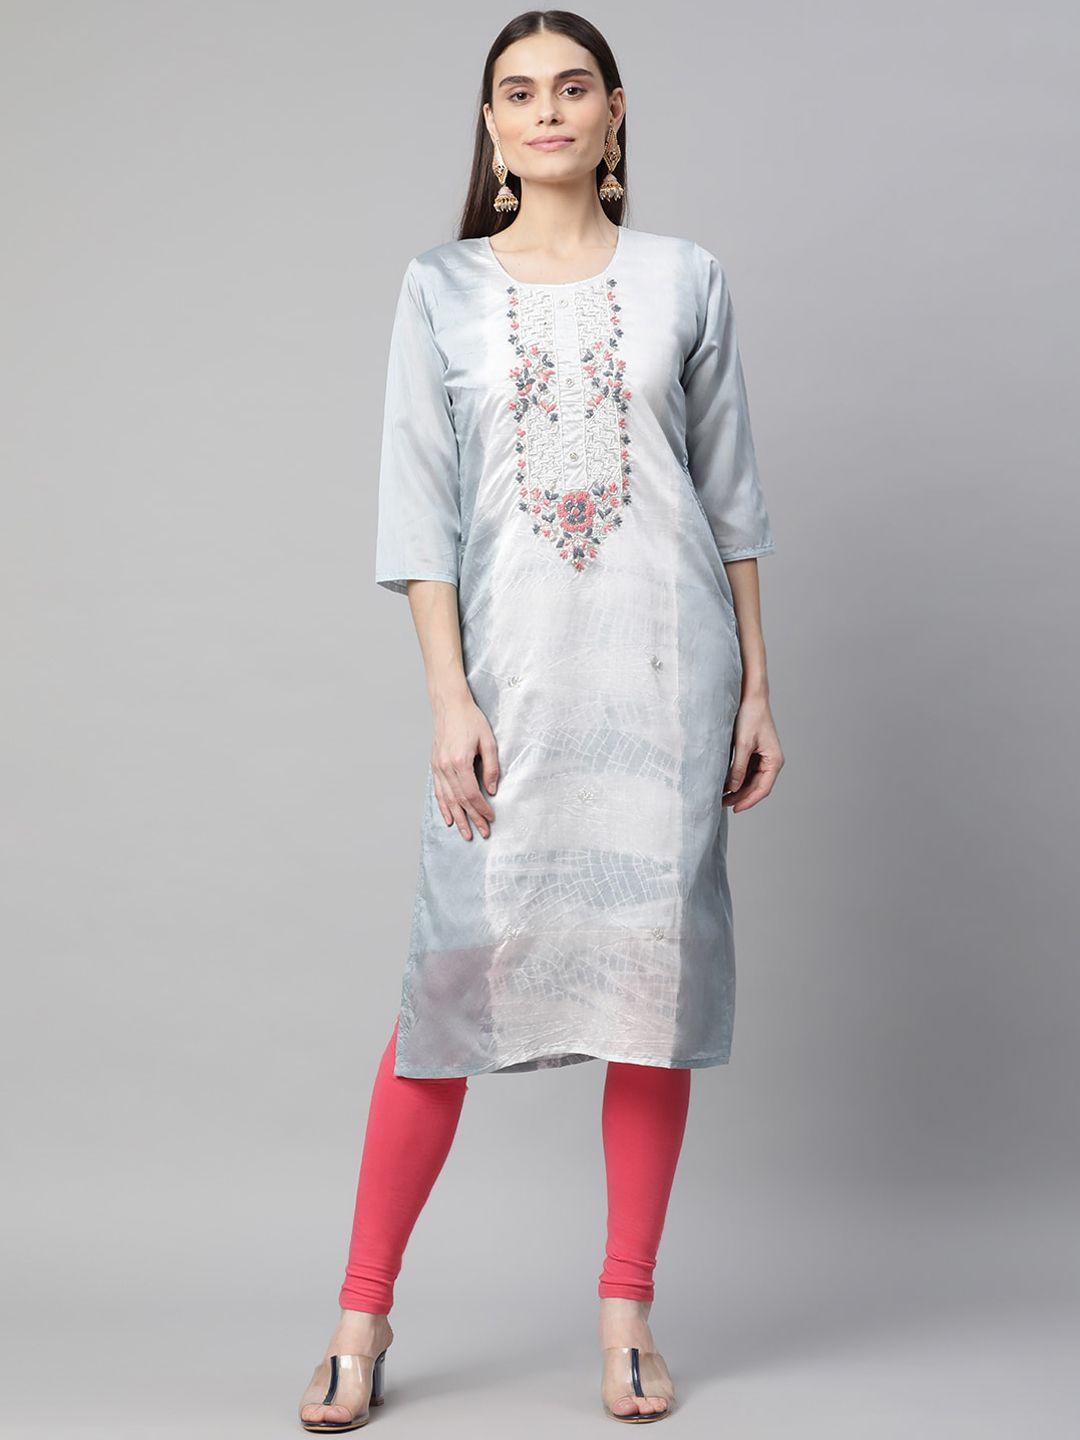 aarika women grey floral embroidered handloom kurta